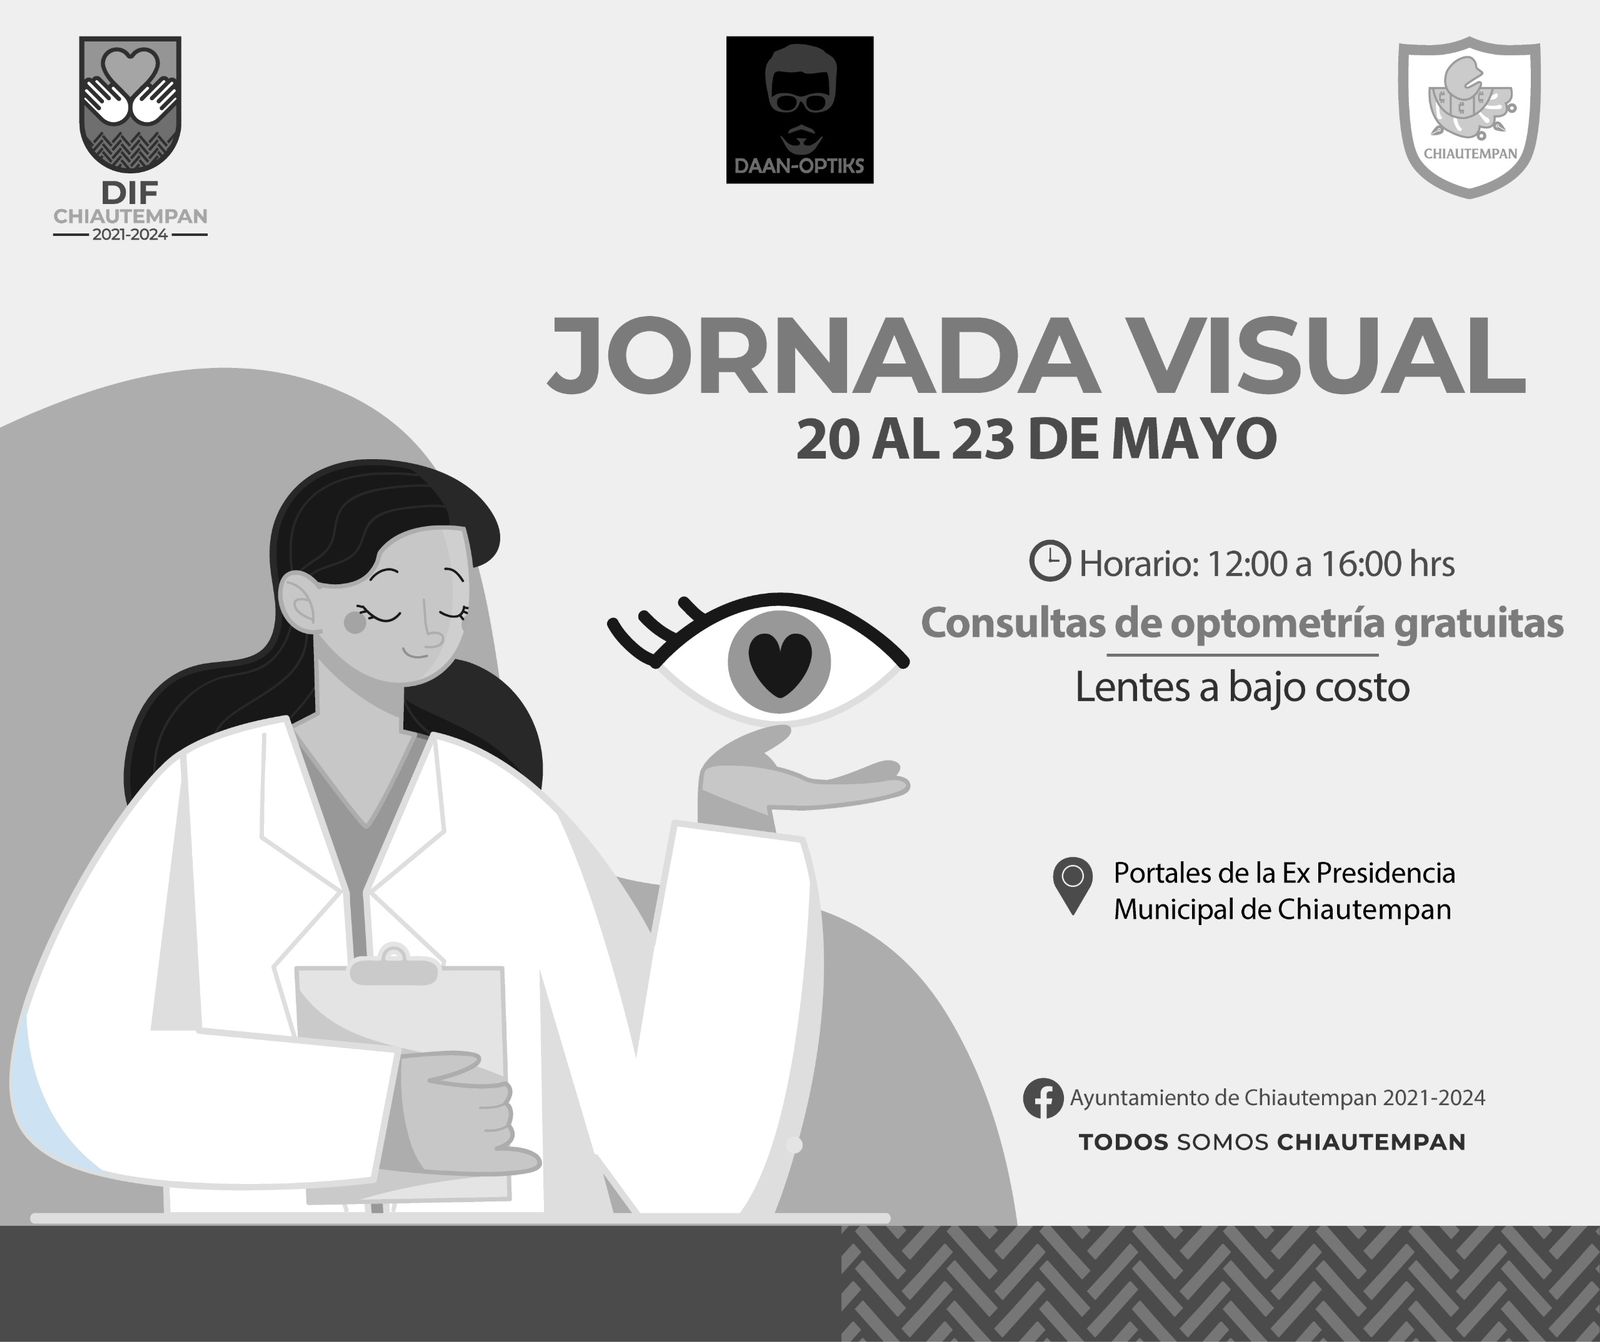 Invita Ayuntamiento de Chiautempan a Jornada Visual